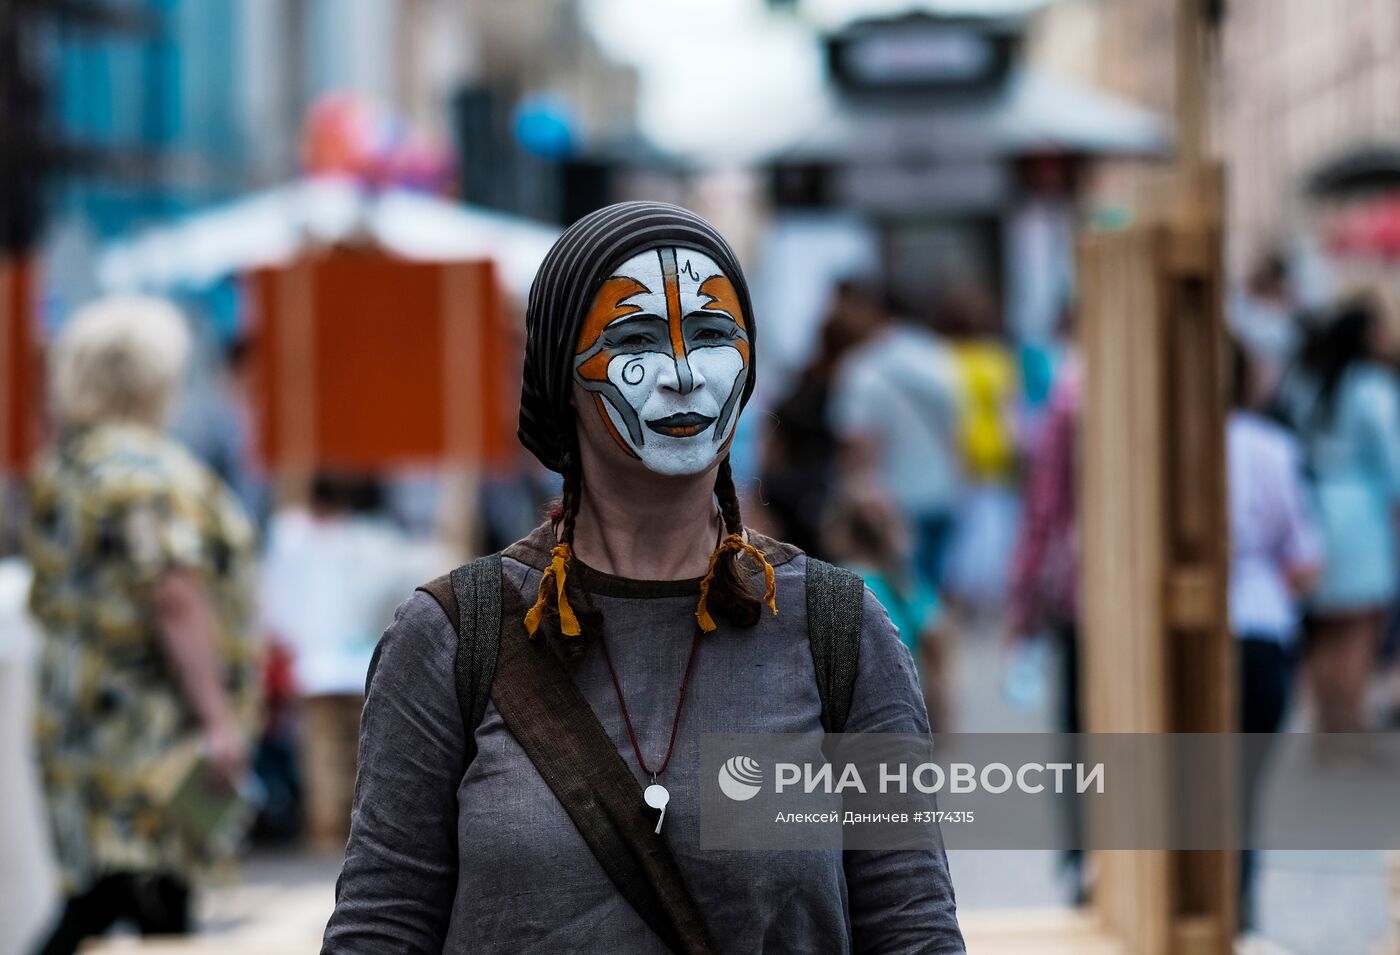 Фестиваль городской культуры "Живые улицы" в Санкт-Петербурге